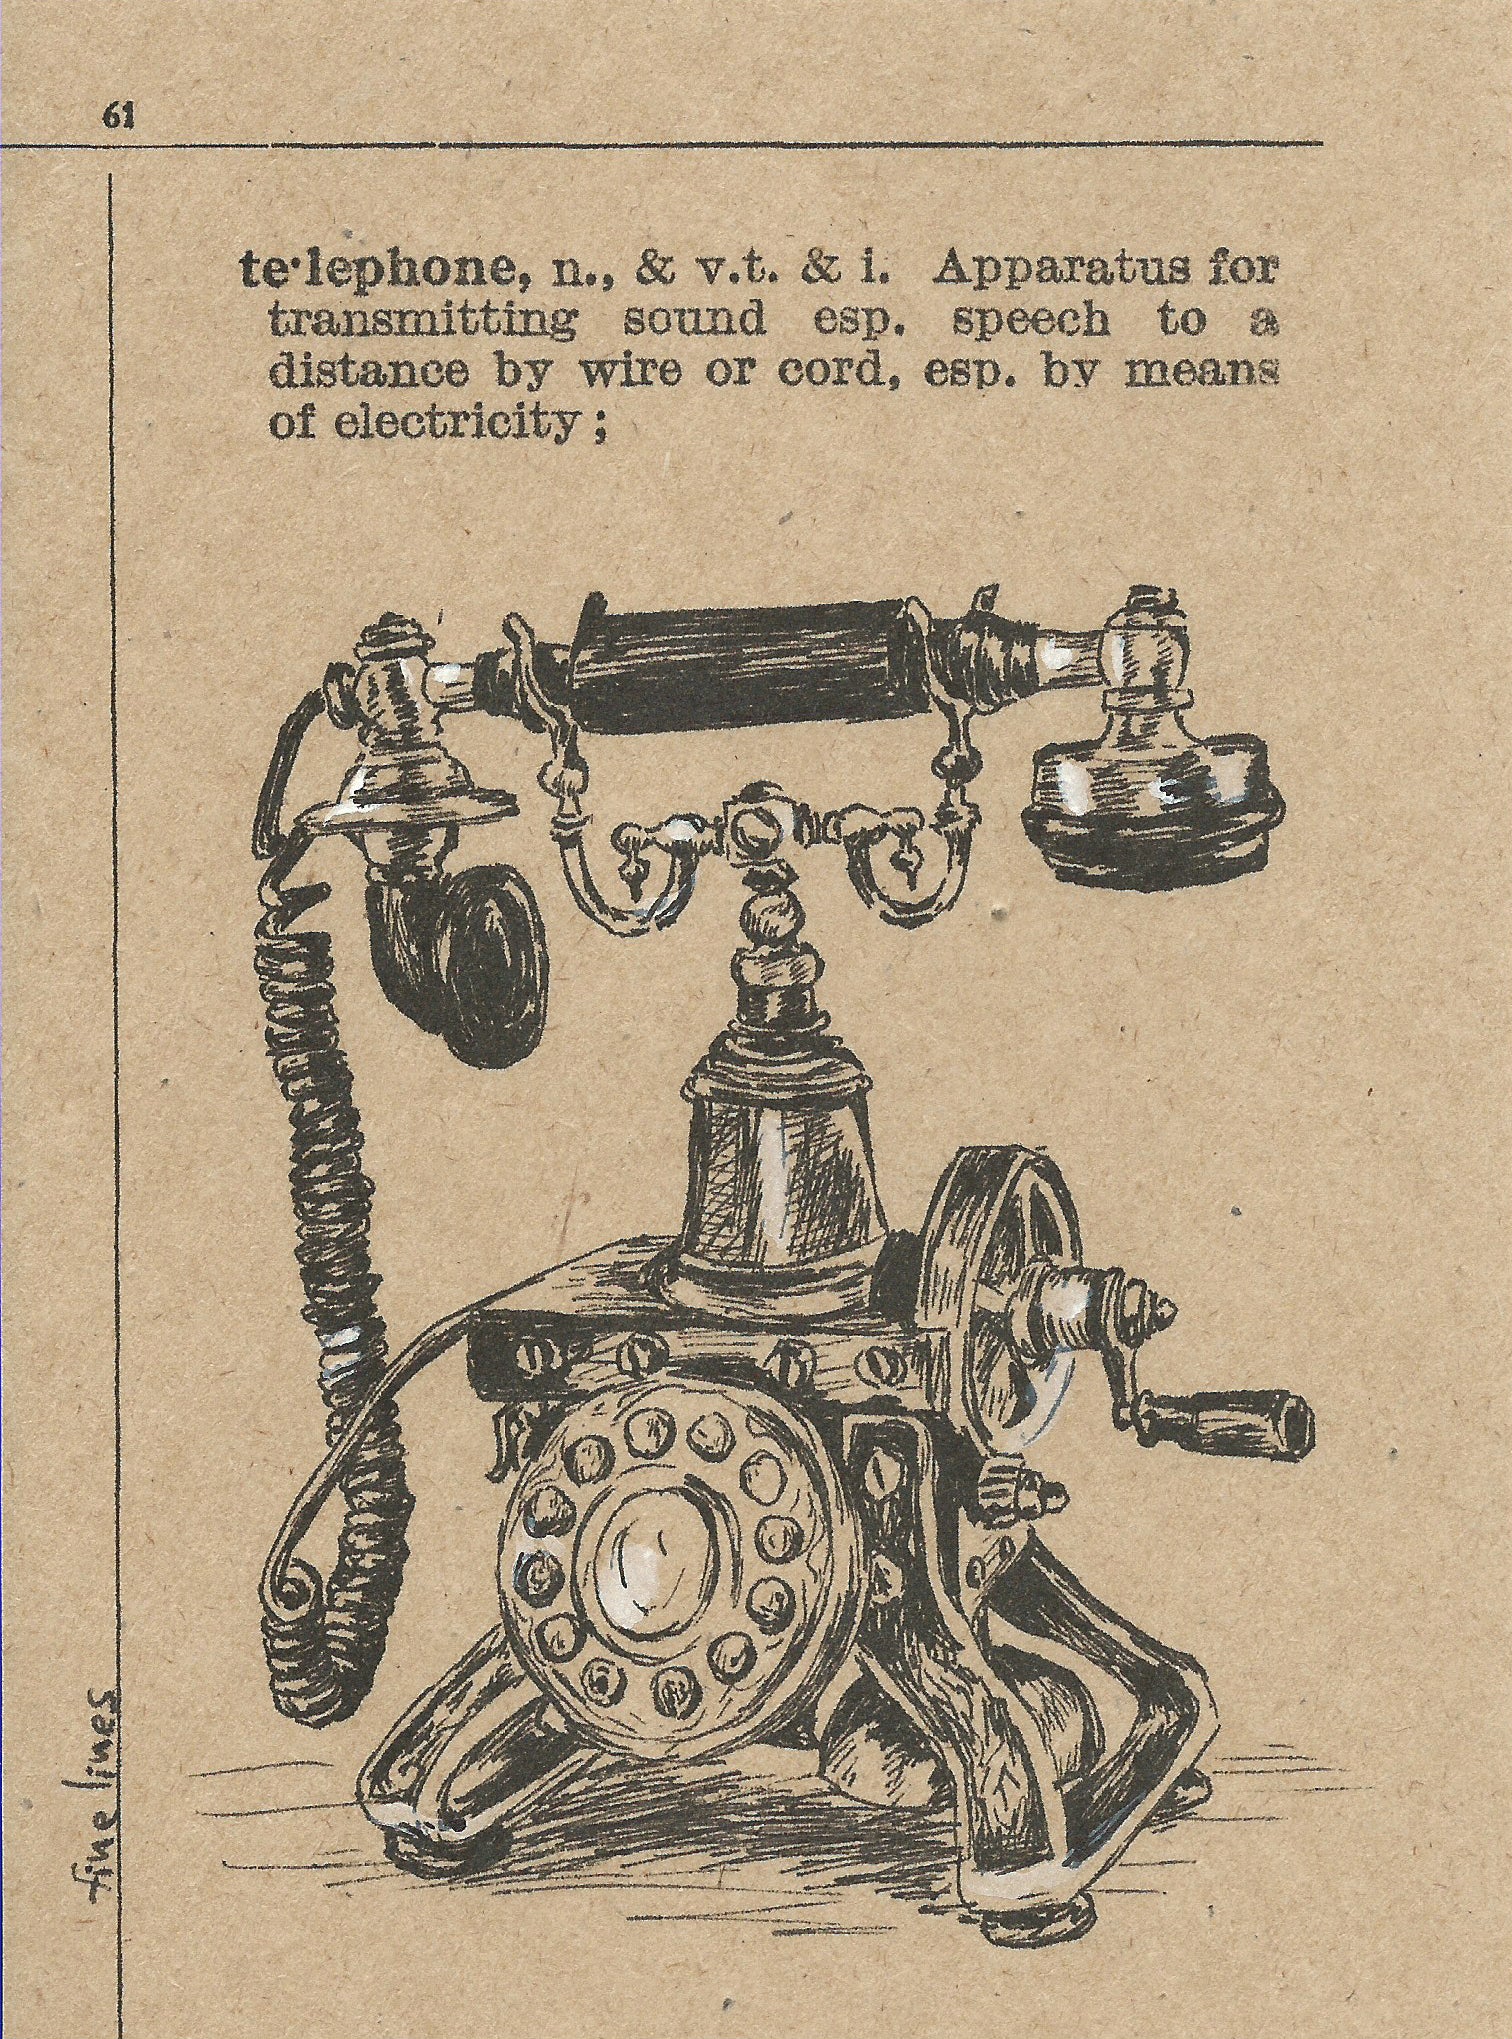 הדפס טלפון עתיק למיסגור - rachelsfinelines